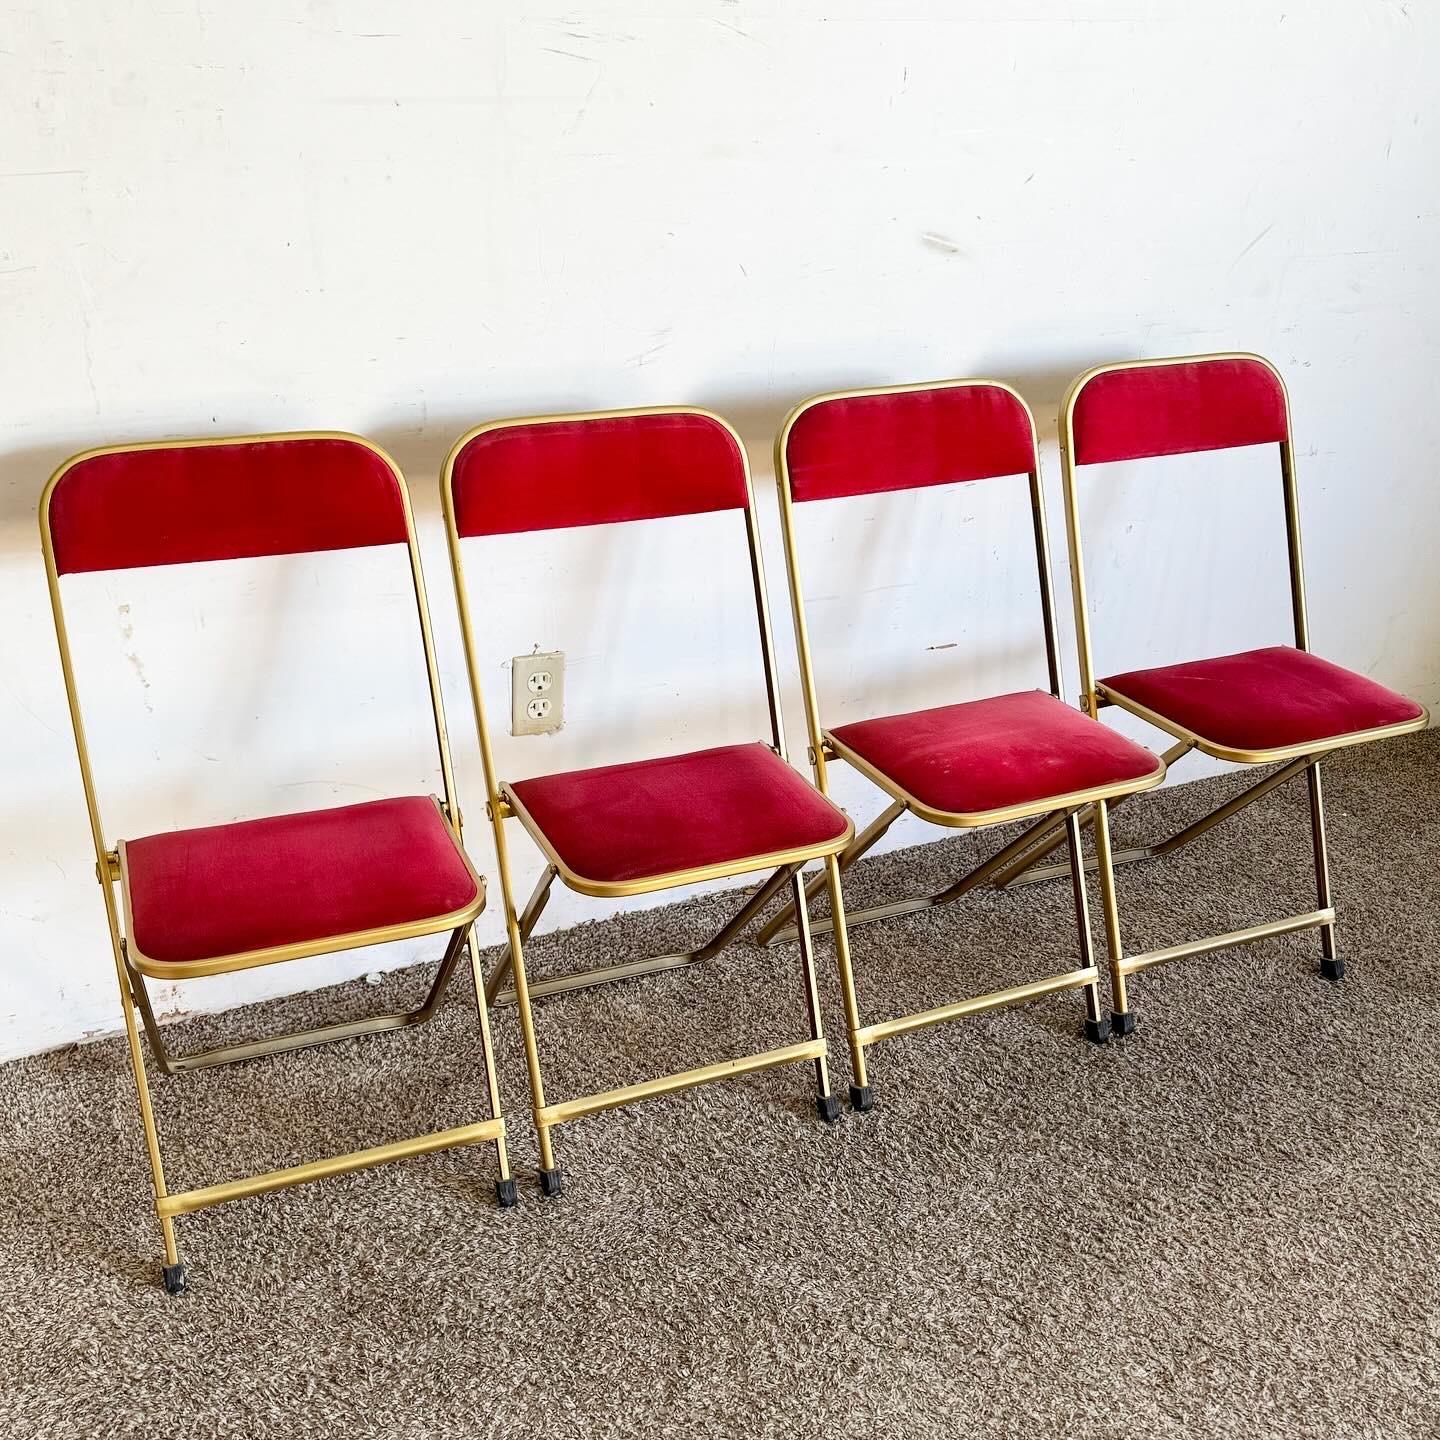 Retrouvez l'élégance du milieu du siècle avec ce lot de quatre chaises pliantes Vintage Gold and Red de A. Fritz and Co. Le luxueux cadre doré et l'assise rouge vif créent un magnifique contraste, alliant fonctionnalité et style. Ces chaises